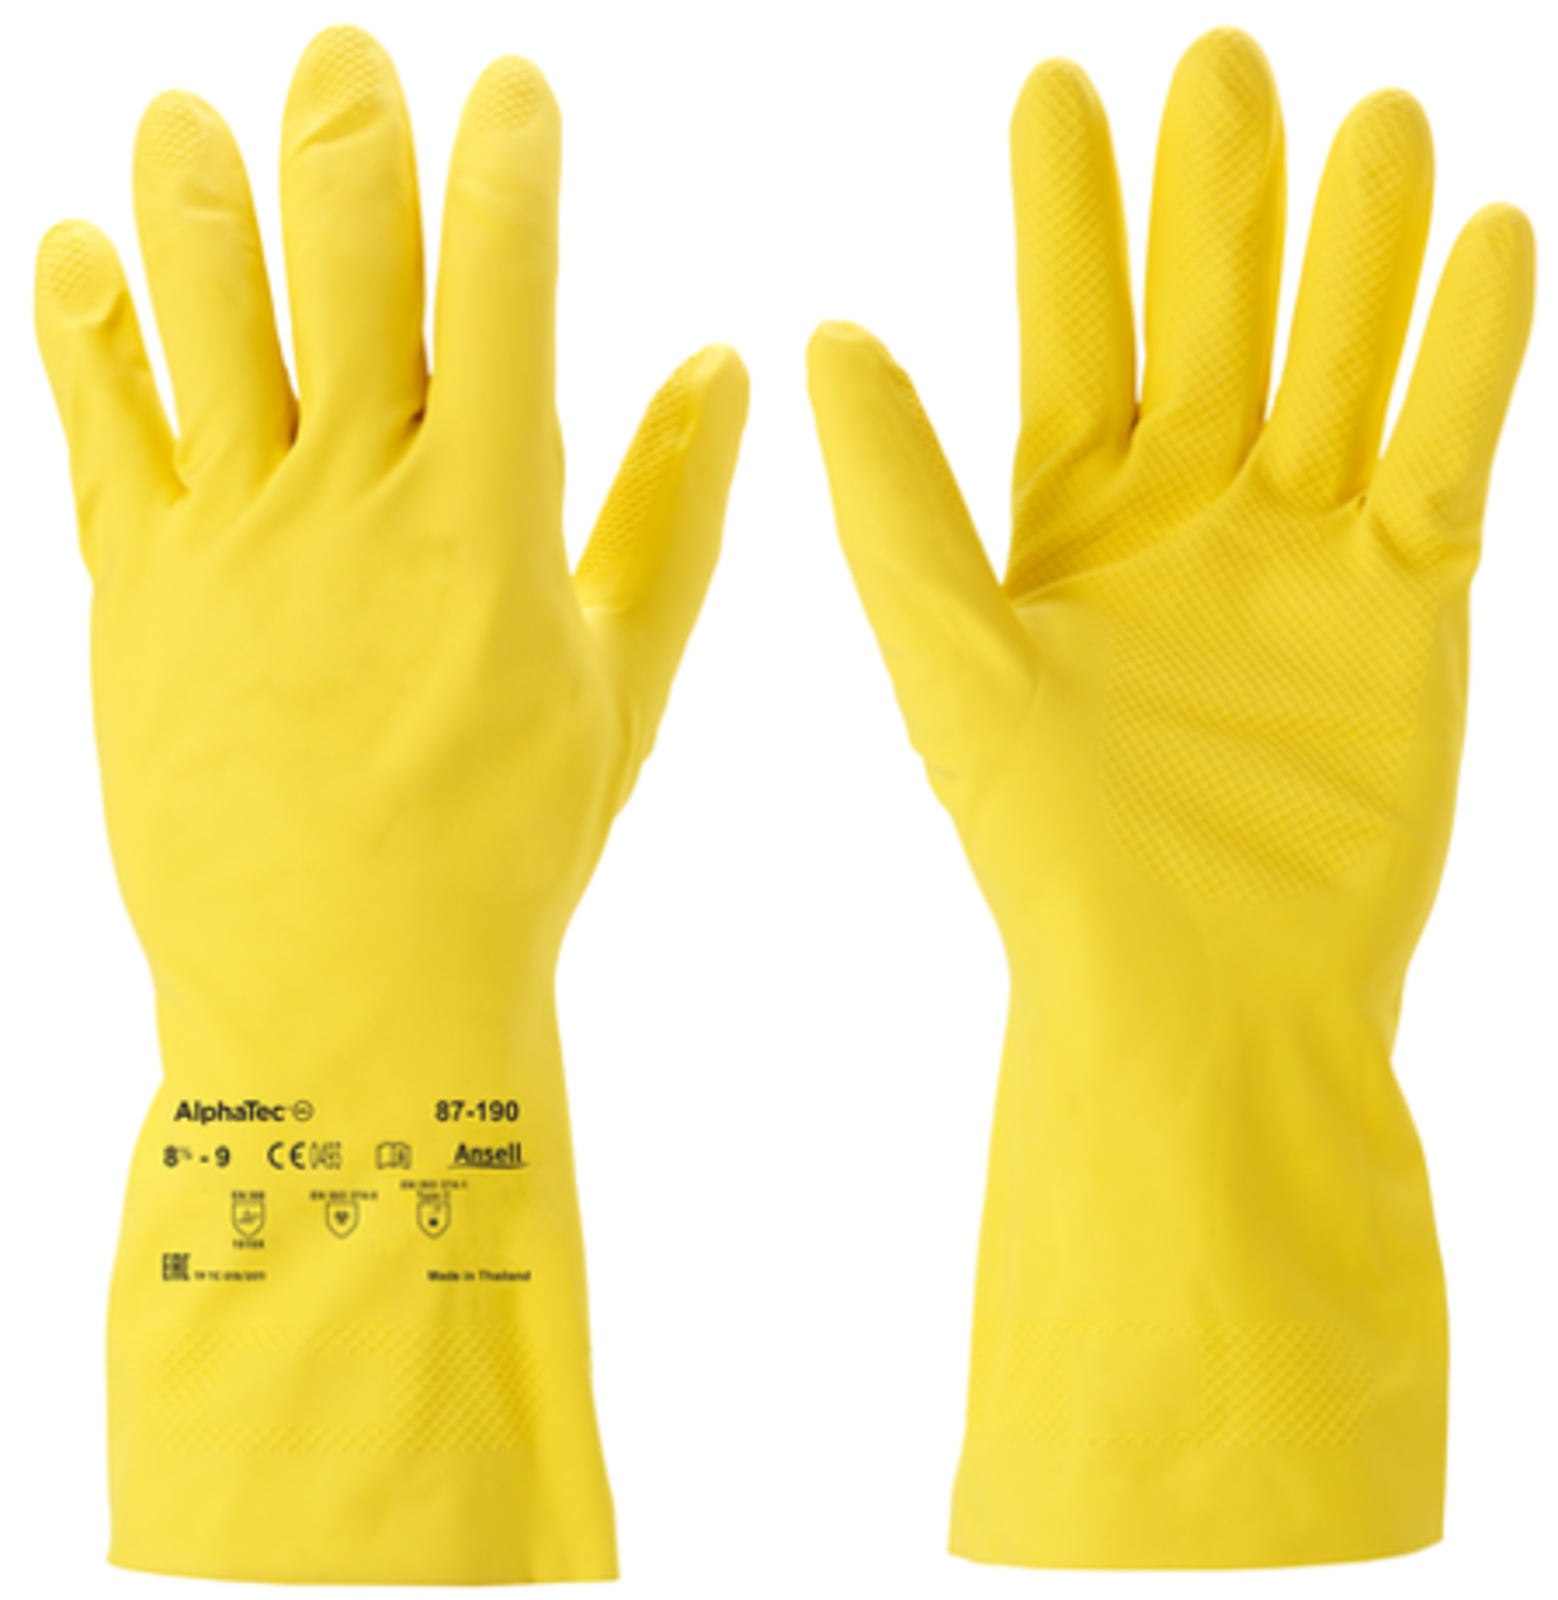 Protichemické rukavice 87-190 Econohands - veľkosť: 8/M